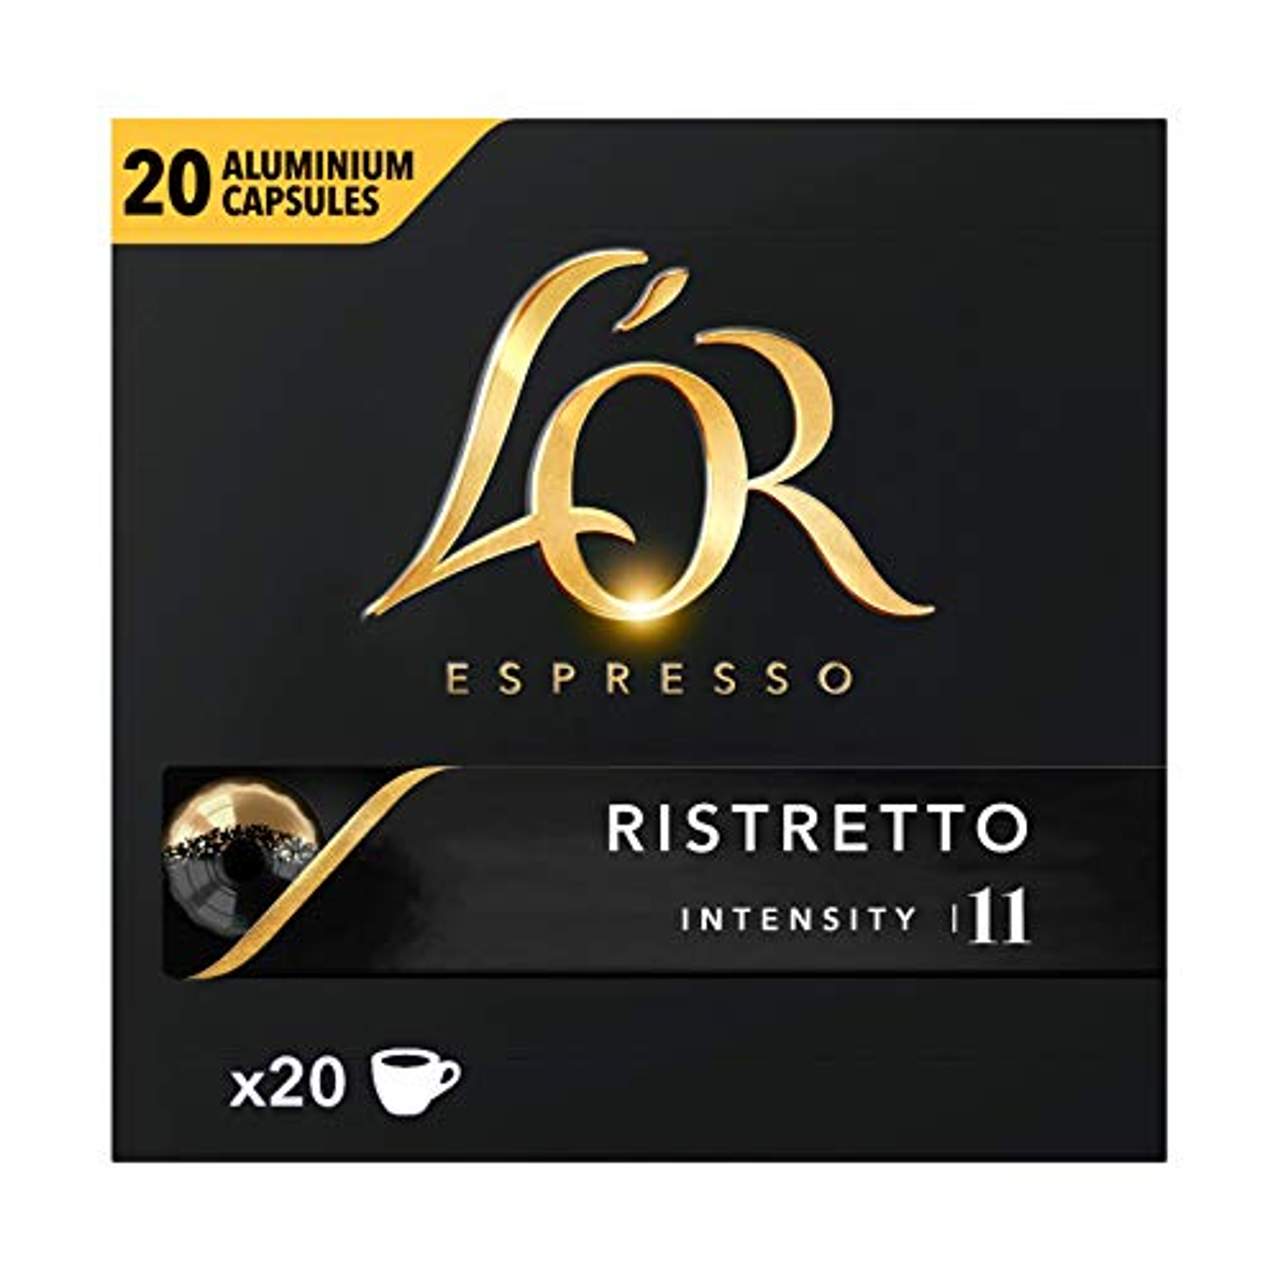 L'OR Espresso Coffee Ristretto Intensity 11